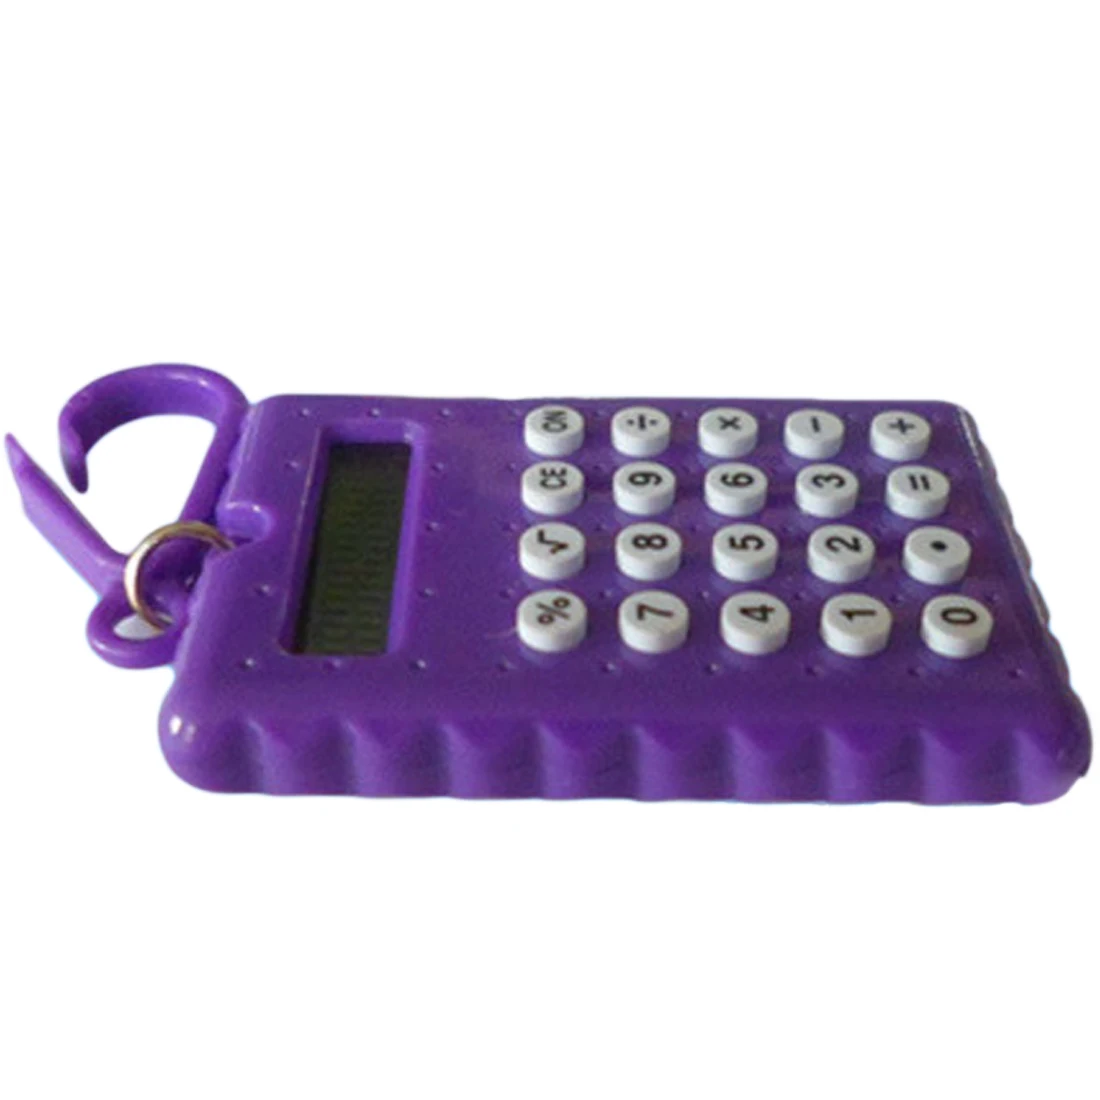 Высокое качество Новое поступление студенческий мини электронный калькулятор карамельный цвет расчетный офисные принадлежности подарок супер маленький